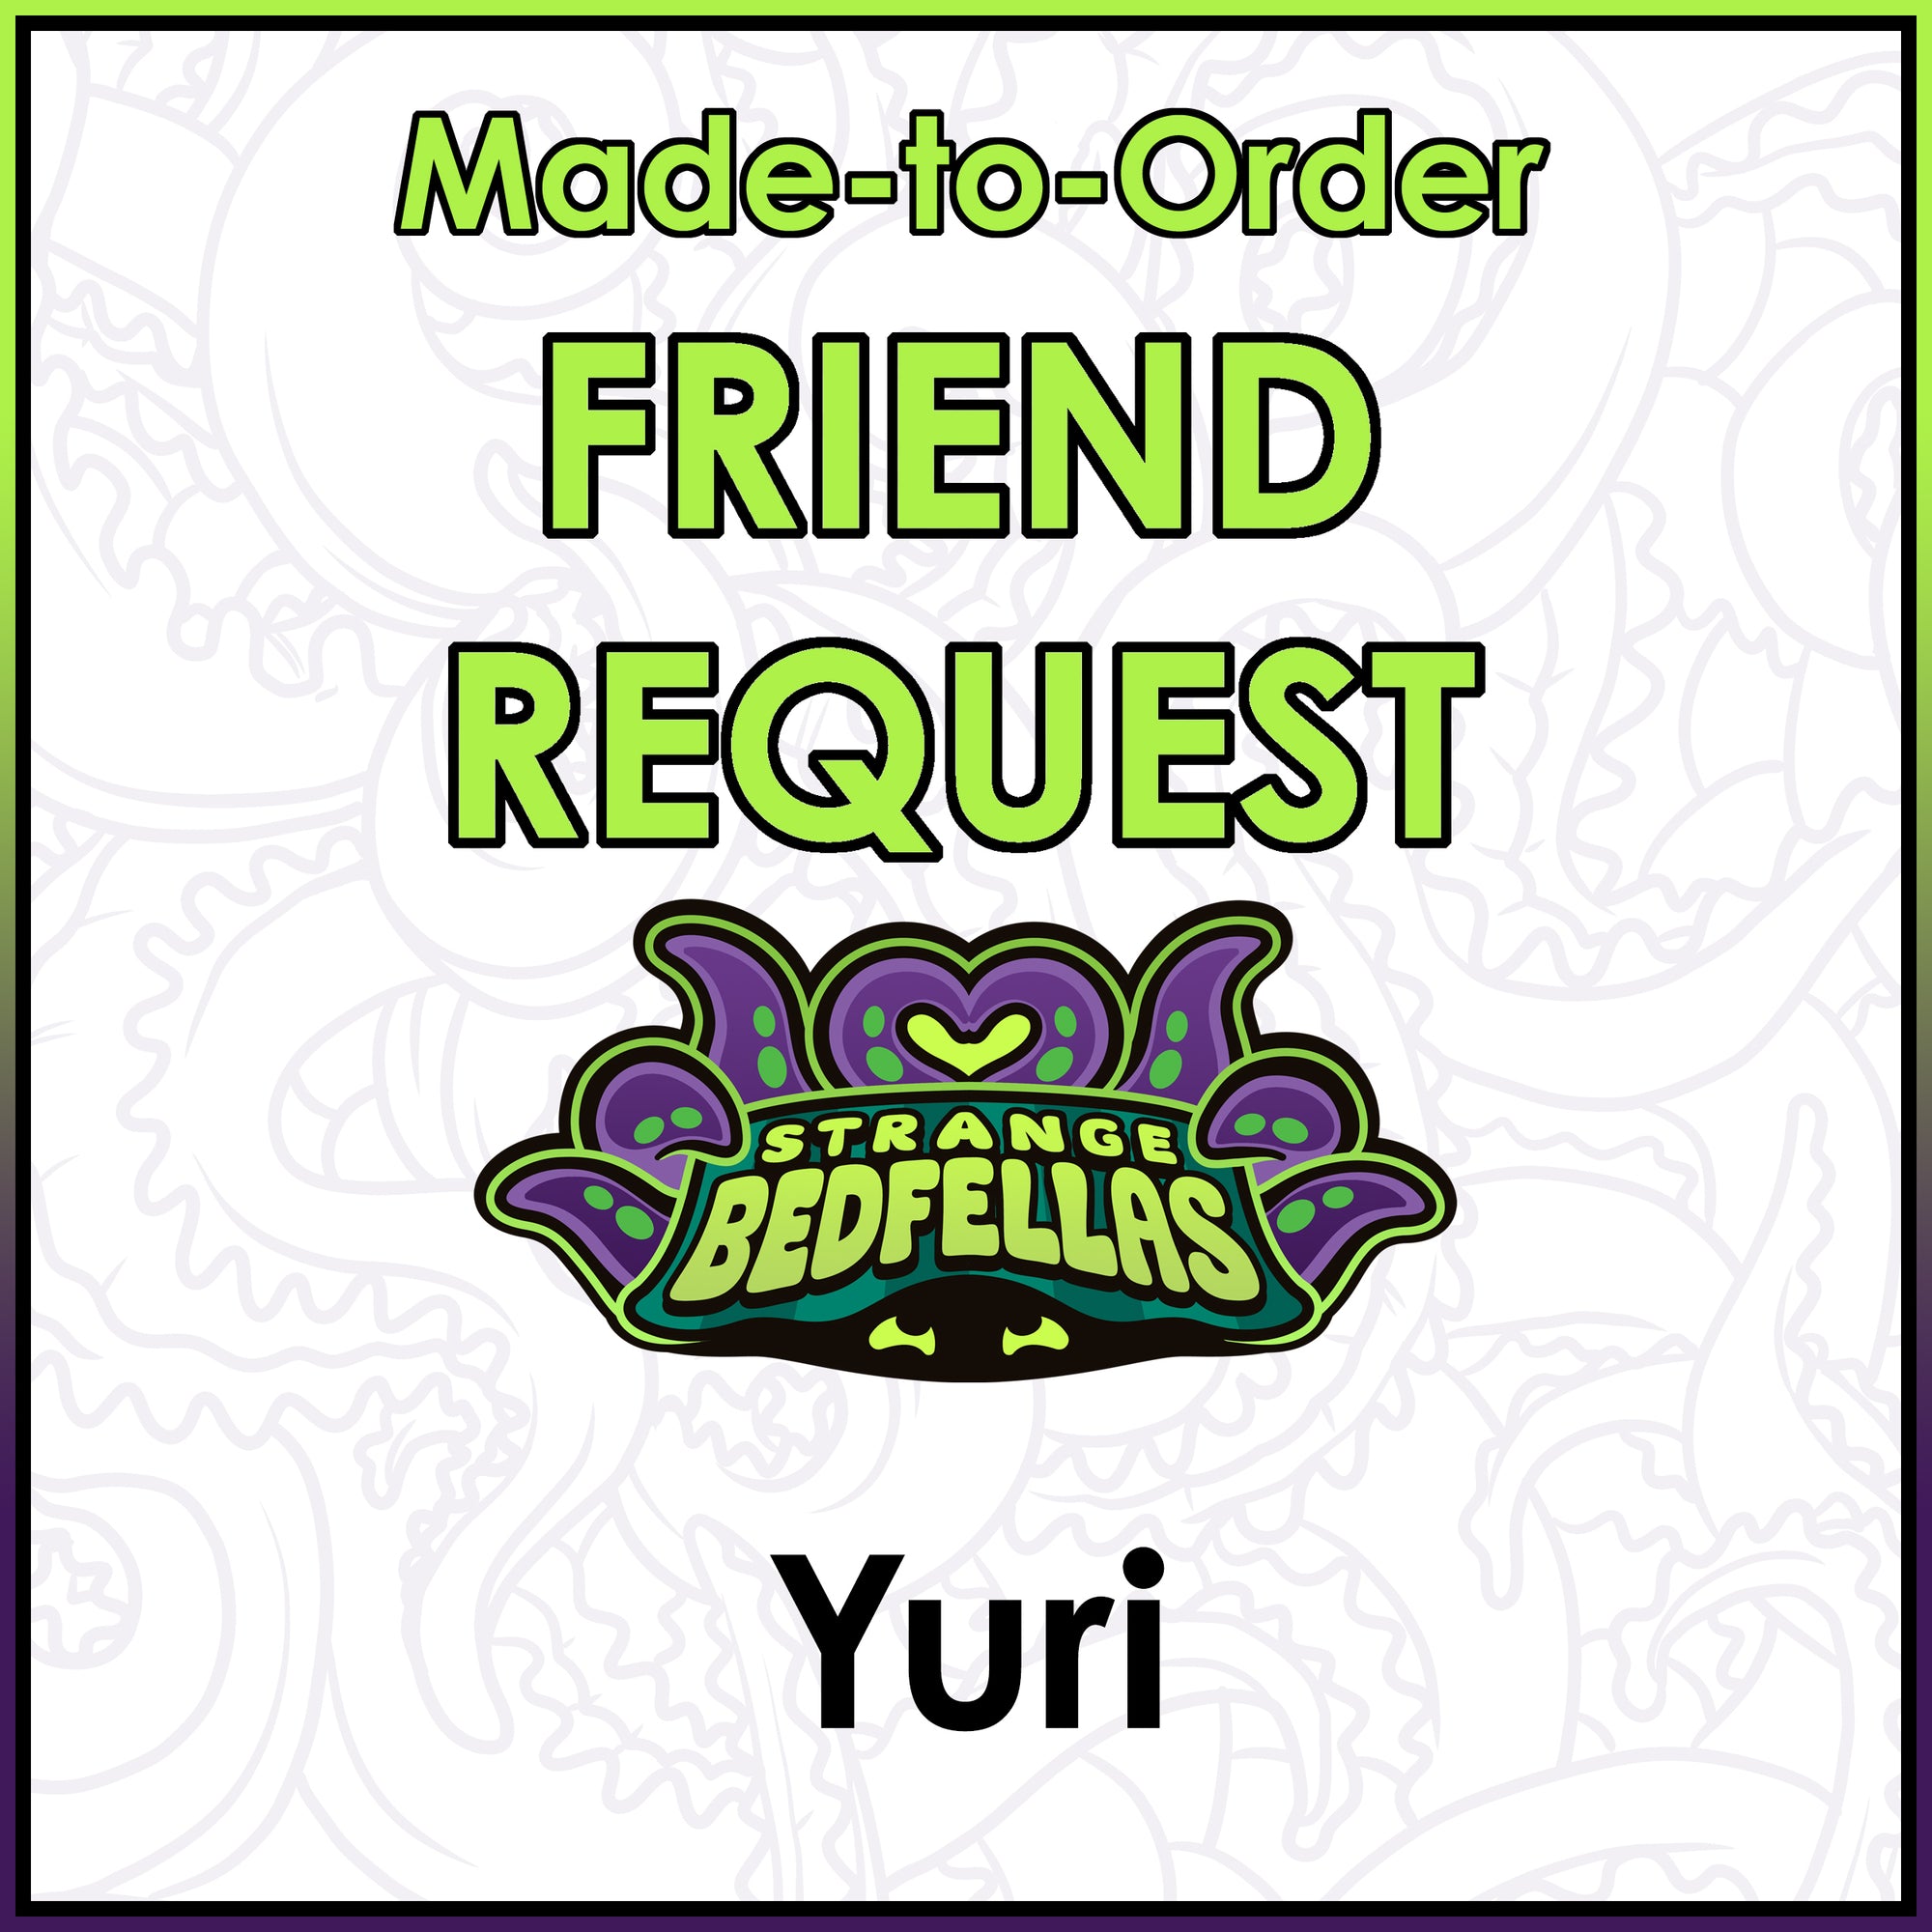 Friend Request - Yuri